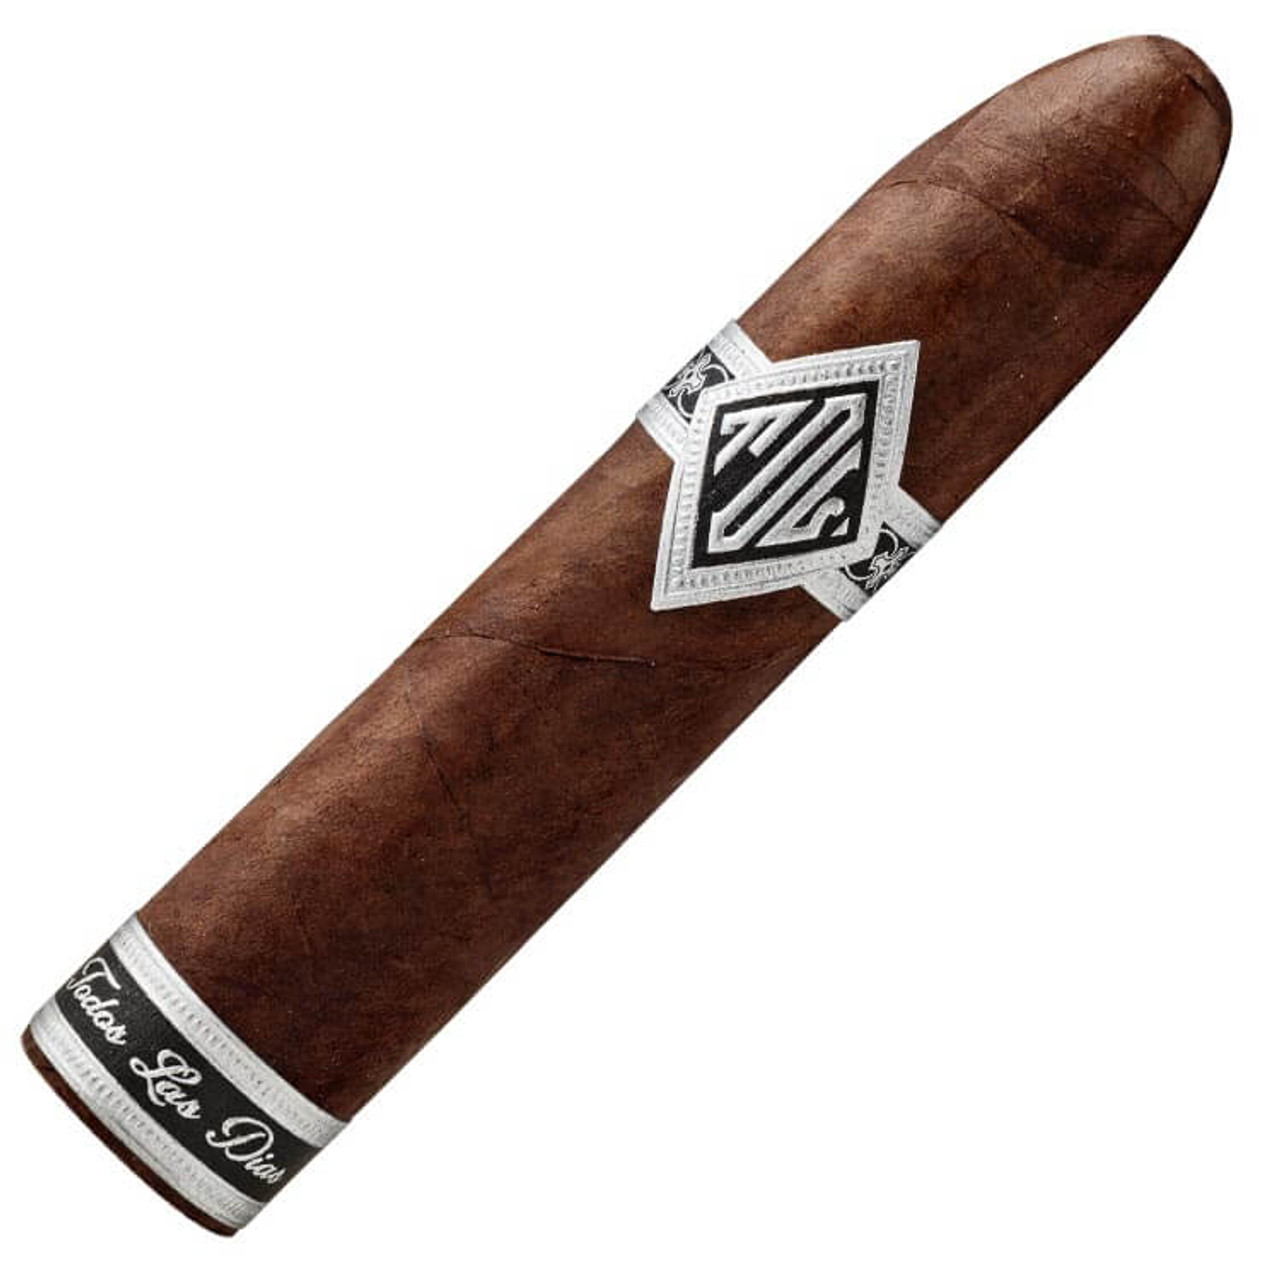 Todos Las Dias Double Wide Belicoso Cigars - 4.75 x 60 (Box of 10)